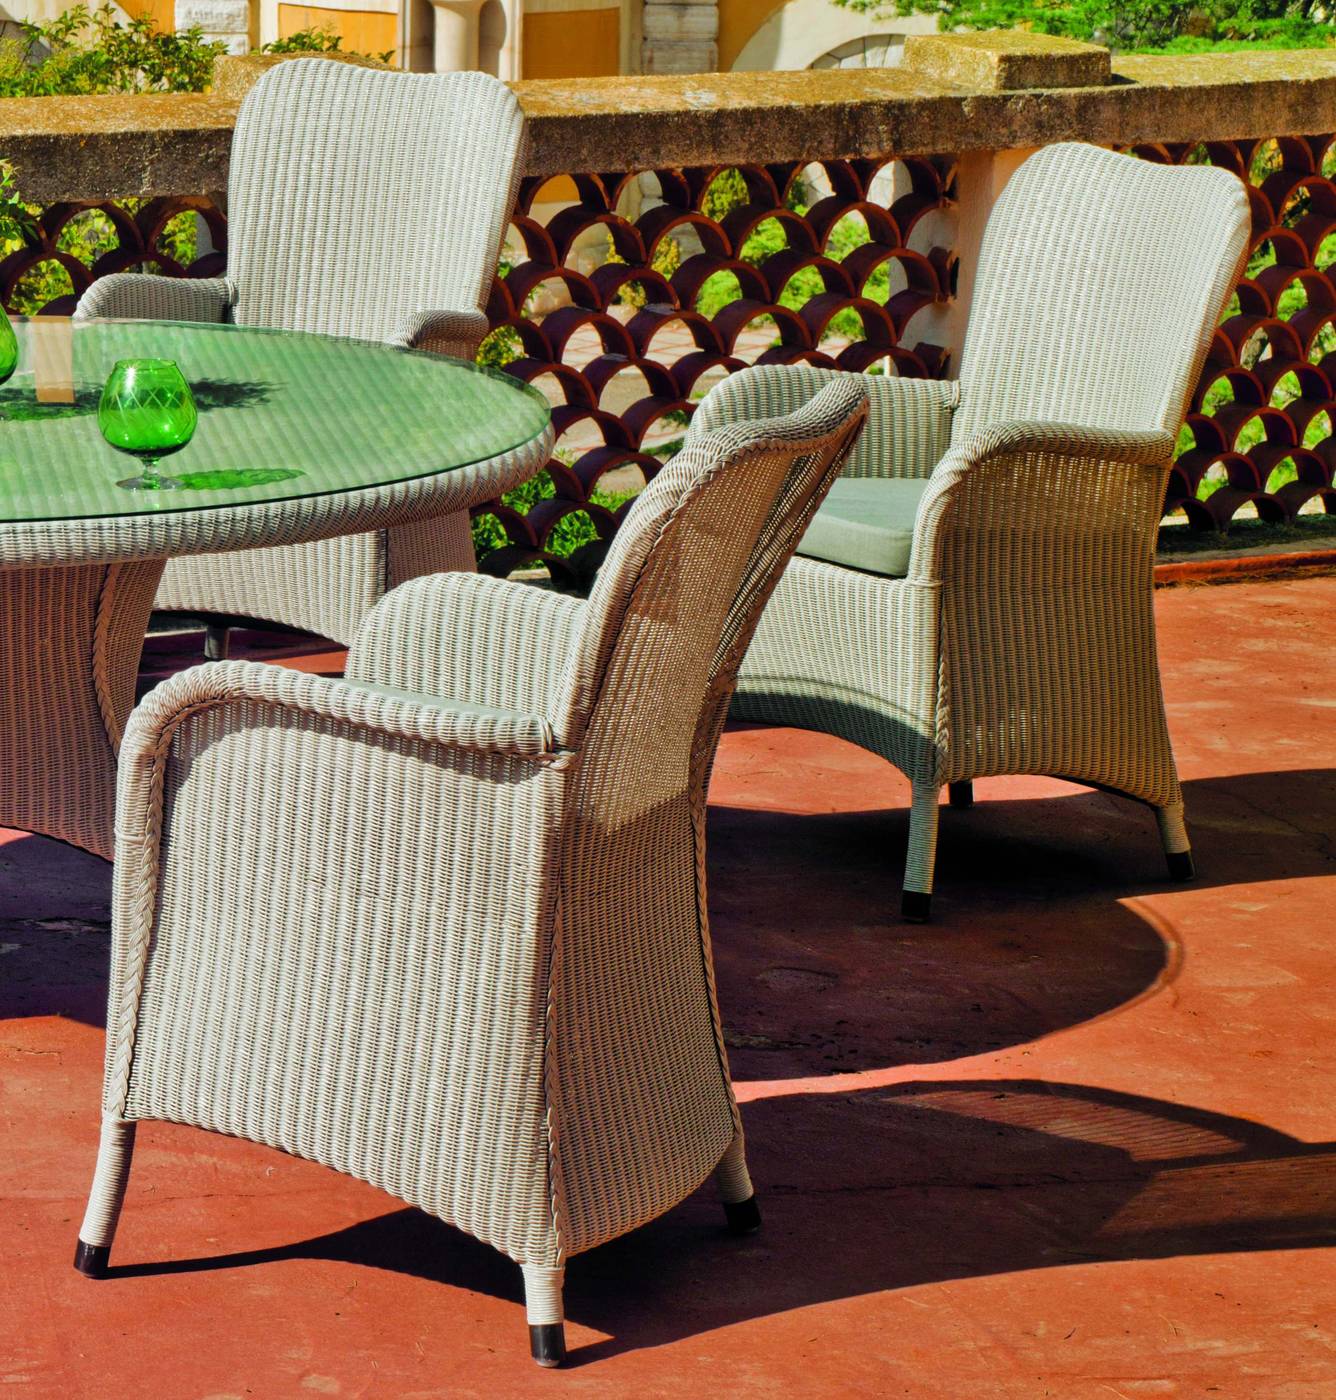 Conjunto Loom Lux Manila-150/6+6c - Conjunto de fibra natural reforzada para jardín. Formada por: mesa redonda de 150 cm. + 6 sillones + cojines